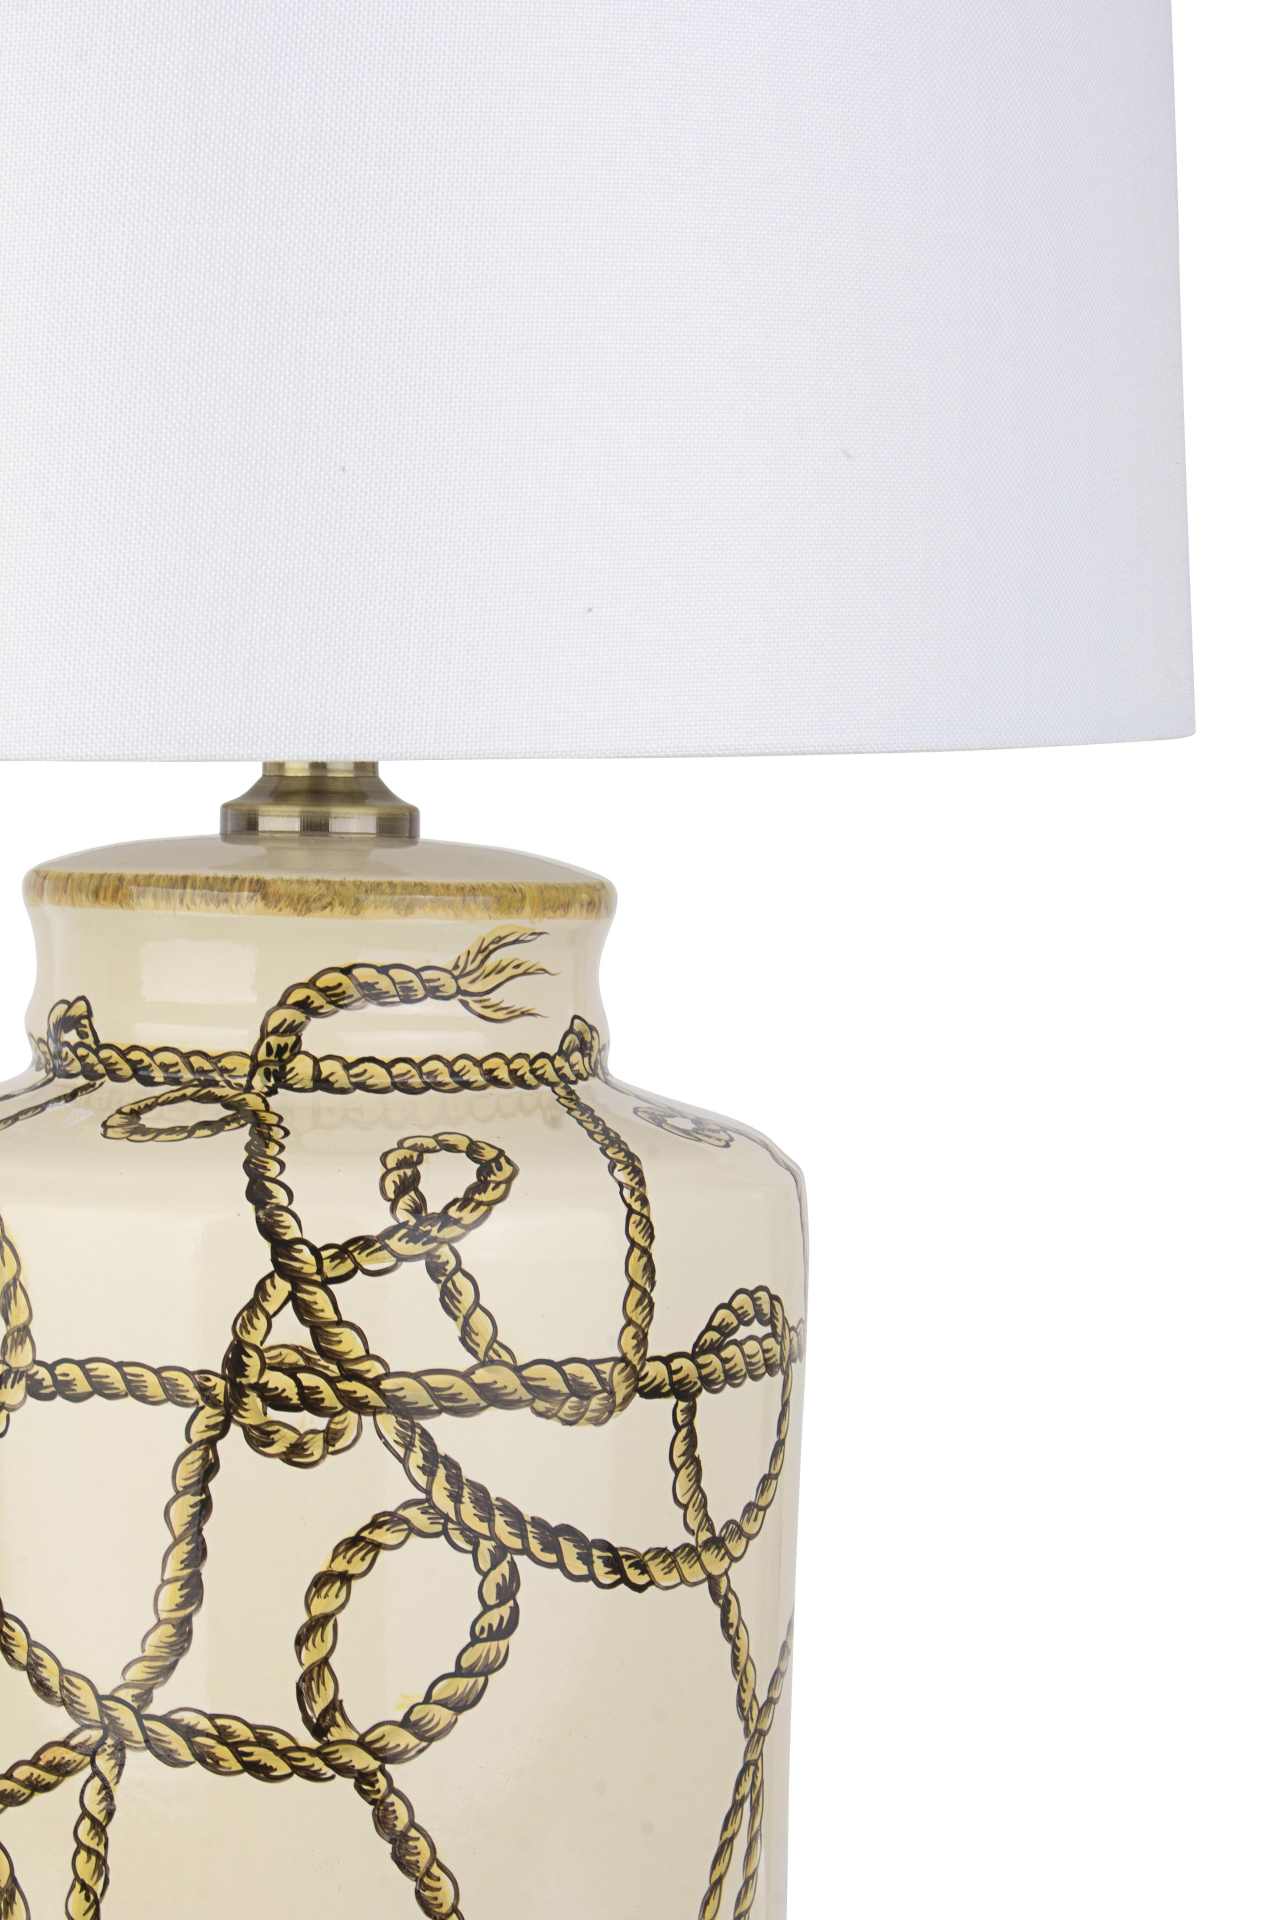 Die Tischleuchte Nappa überzeugt mit ihrem klassischen Design. Gefertigt wurde sie aus Porzellan, welches einen goldenen Farbton besitzt. Die Lampenschirme ist aus Polyester und hat eine weiße Farbe. Die Lampe besitzt eine Höhe von 63 cm.